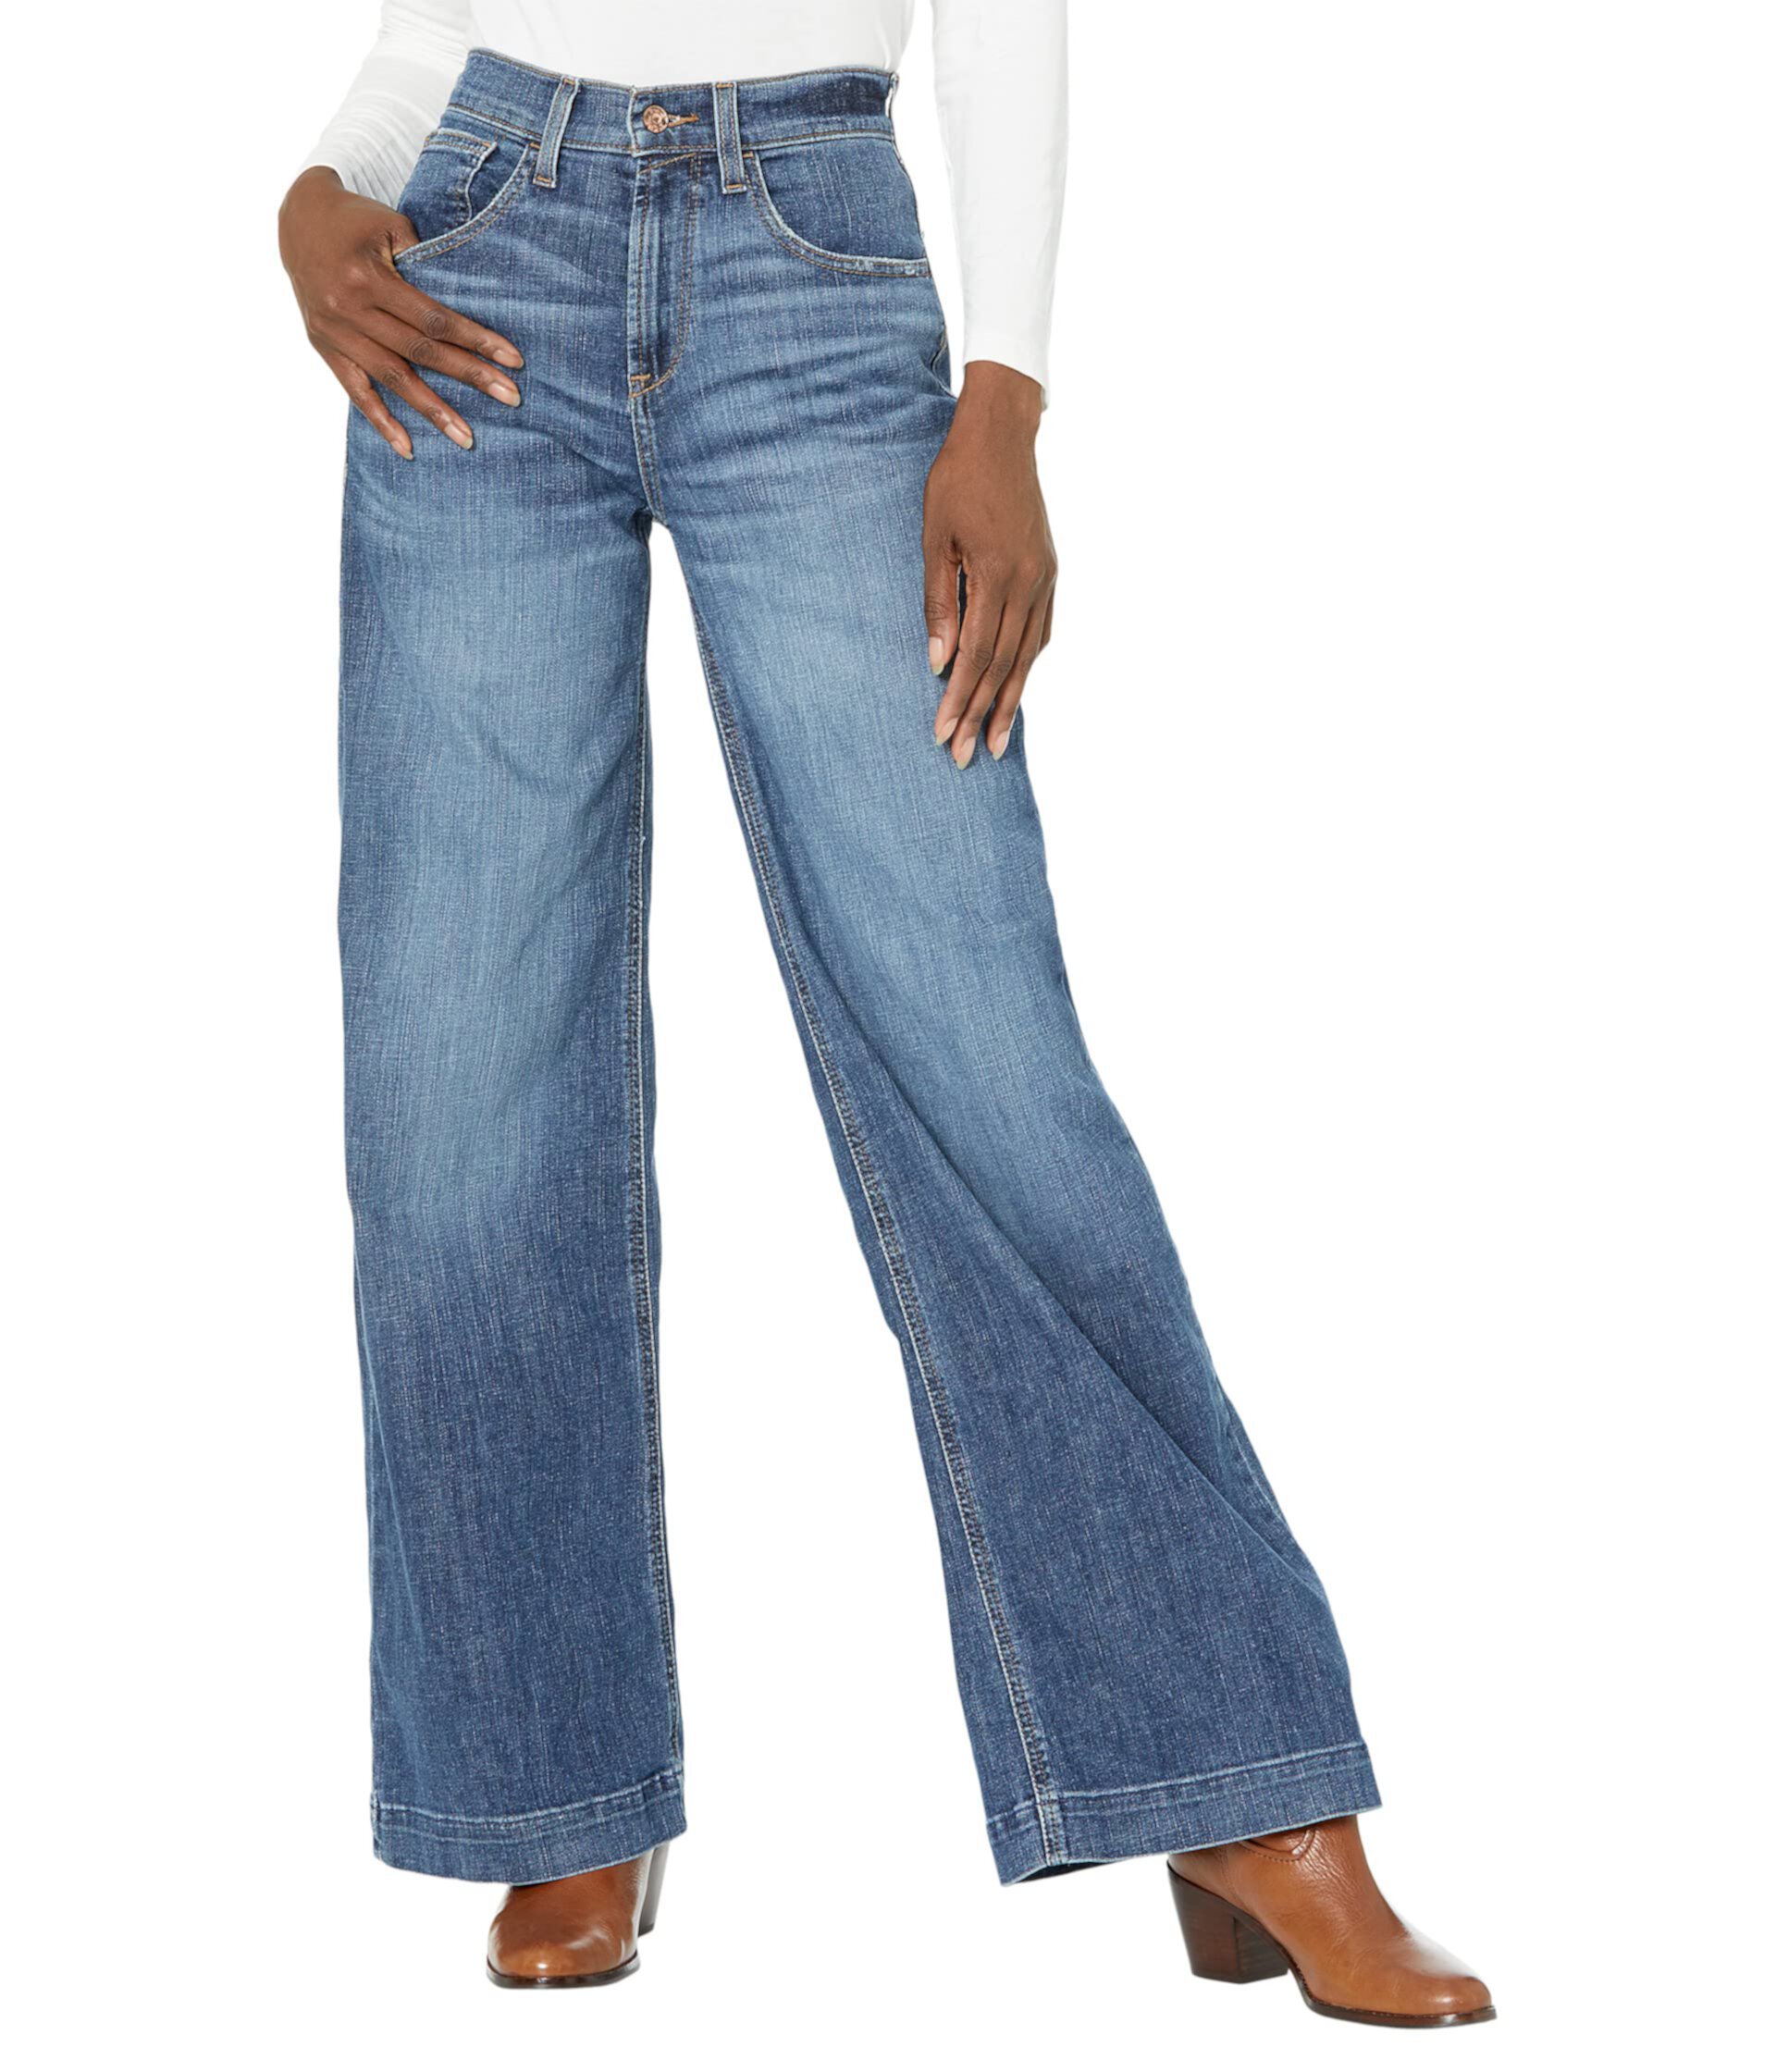 Широкие джинсы Jazmine с ультравысокой посадкой в канадском цвете Ariat